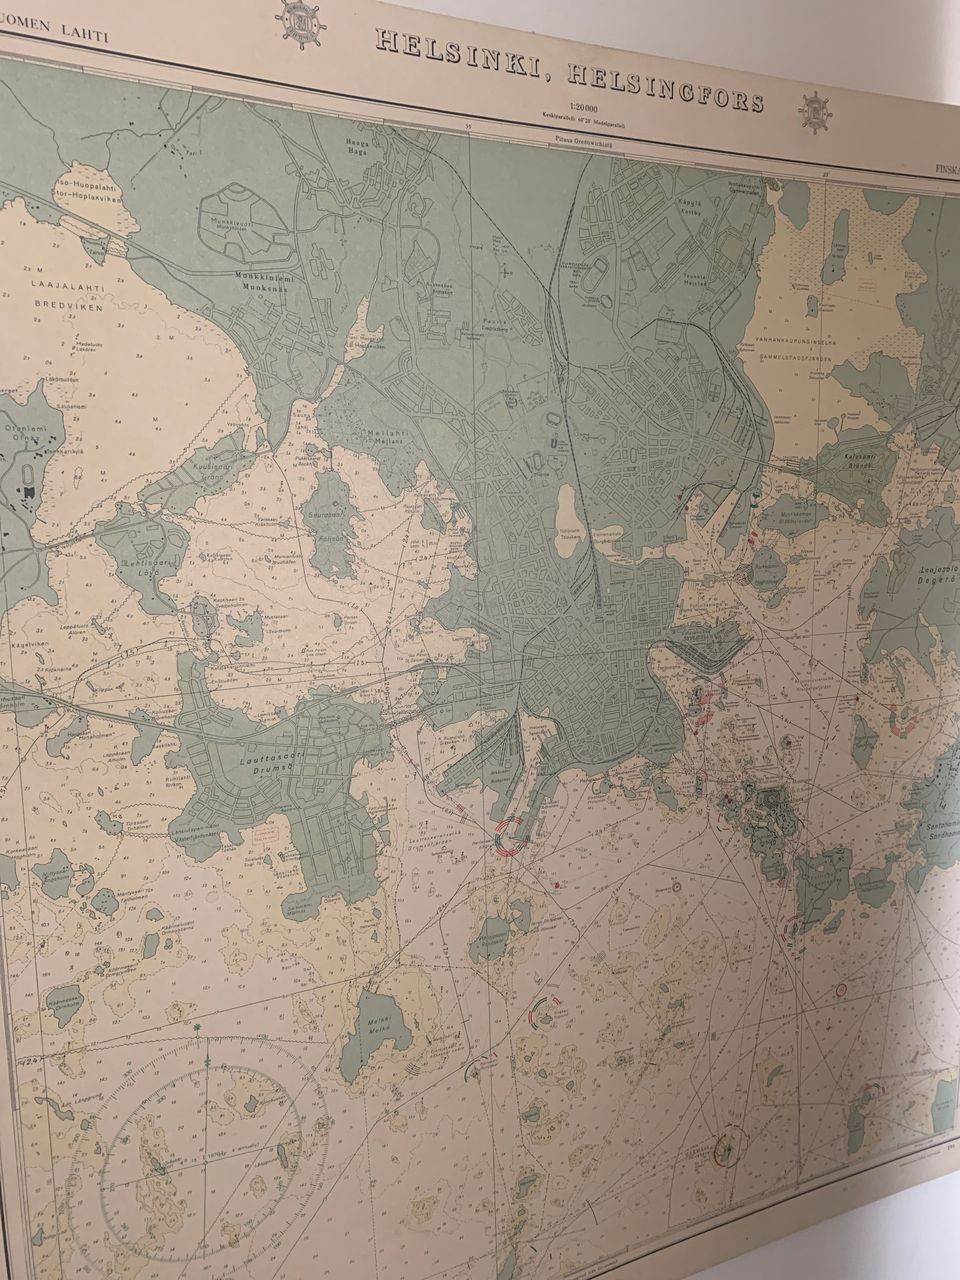 Pahvinen Helsinki-kartta